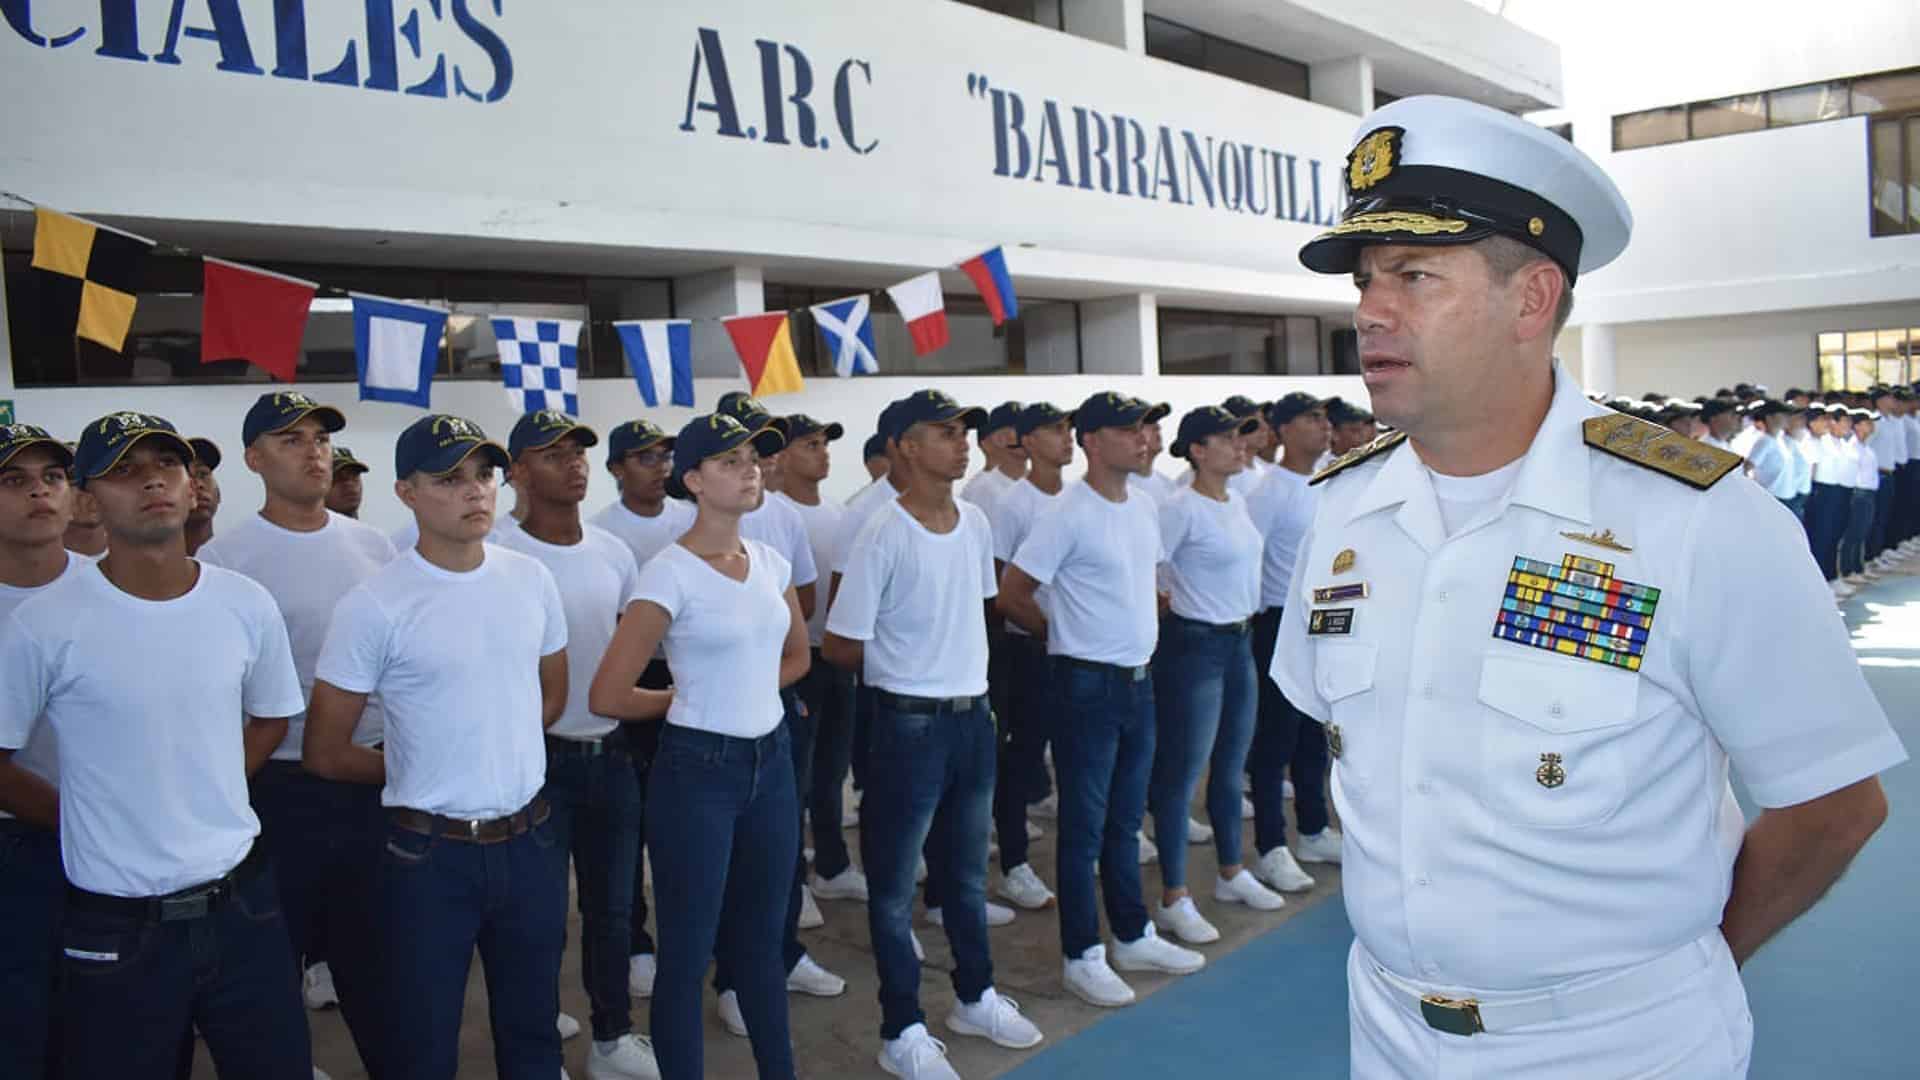 Escuela Naval de Suboficiales ARC Barranquilla teléfonos